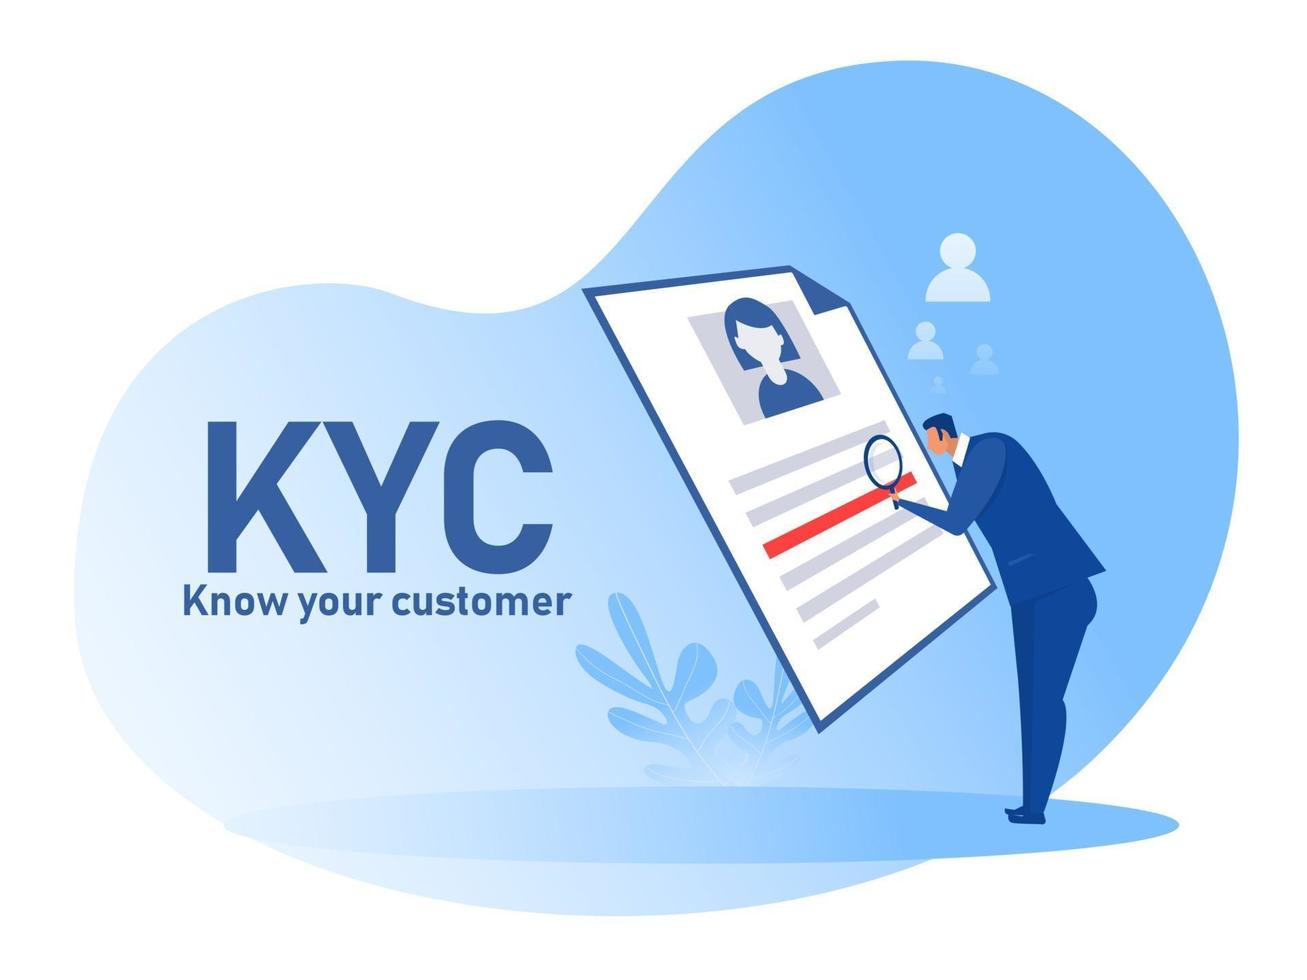 kyc o conozca a su cliente con negocios verificando la identidad del concepto de sus clientes a través de un ilustrador de vectores de lupa